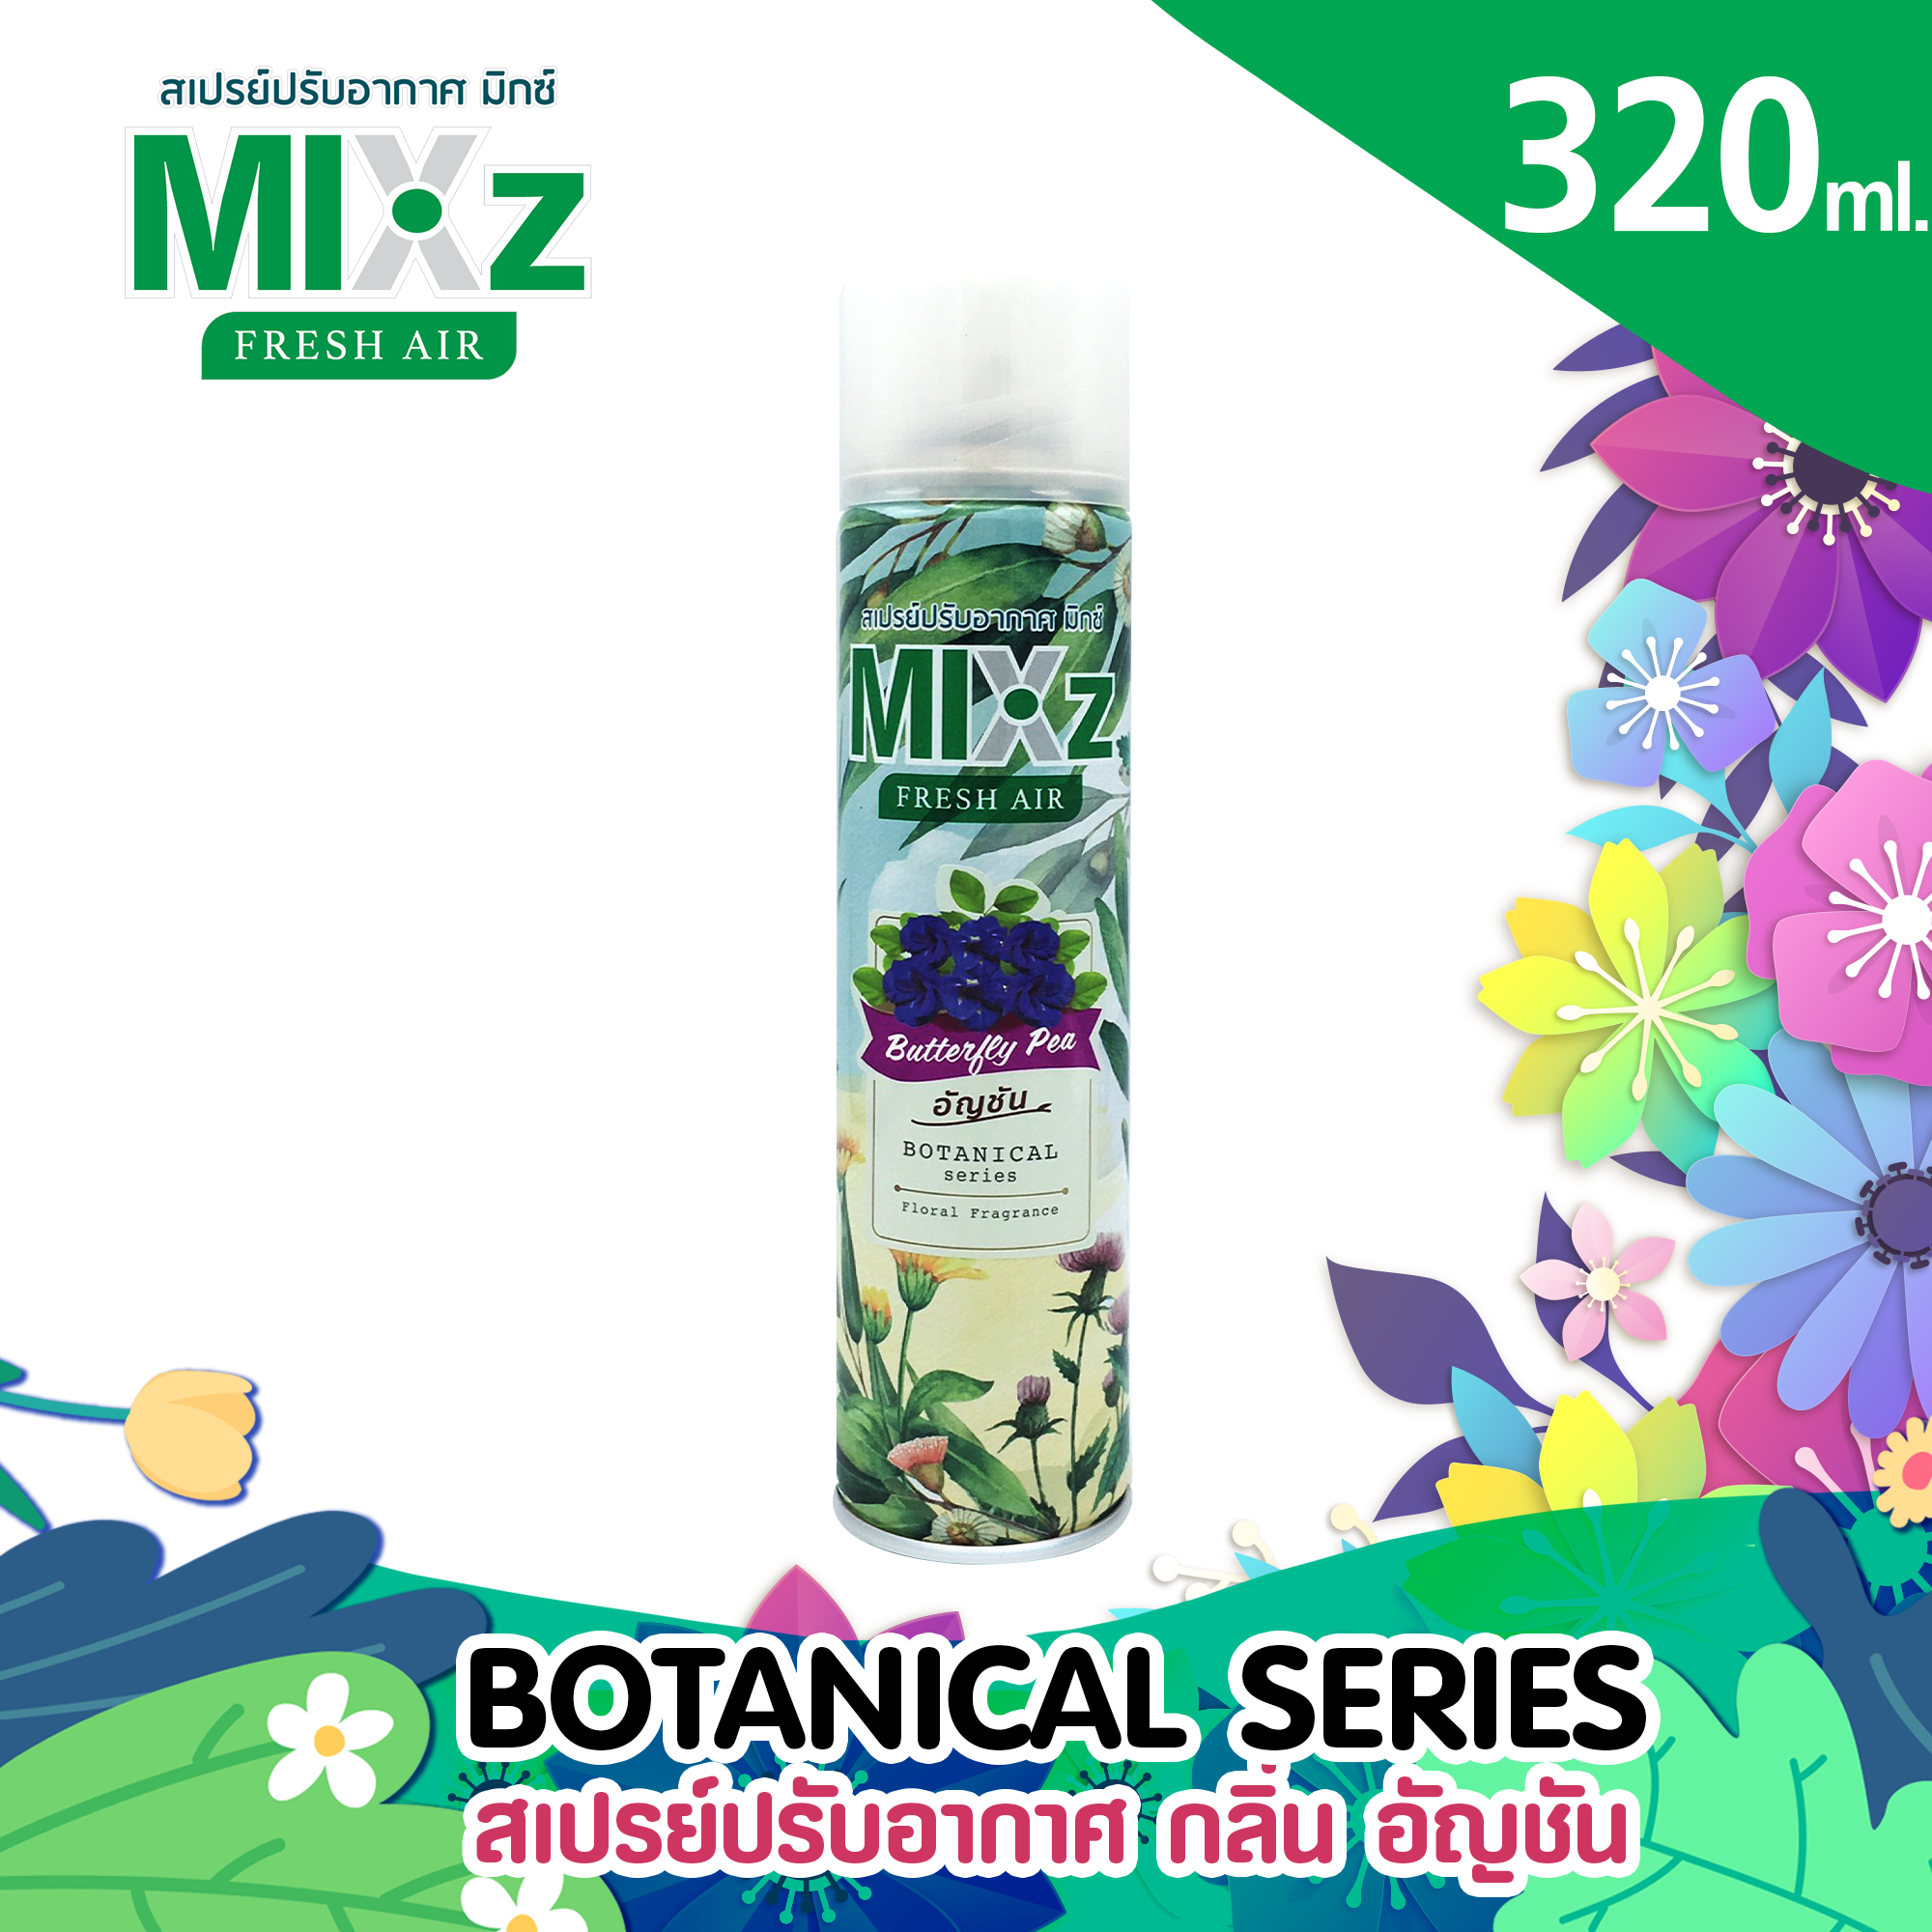 Mixz Botanical สเปร์ยน้ำหอมปรับอากาศ 320 ml.  กลิ่น อัญชัน Butterfly Pea